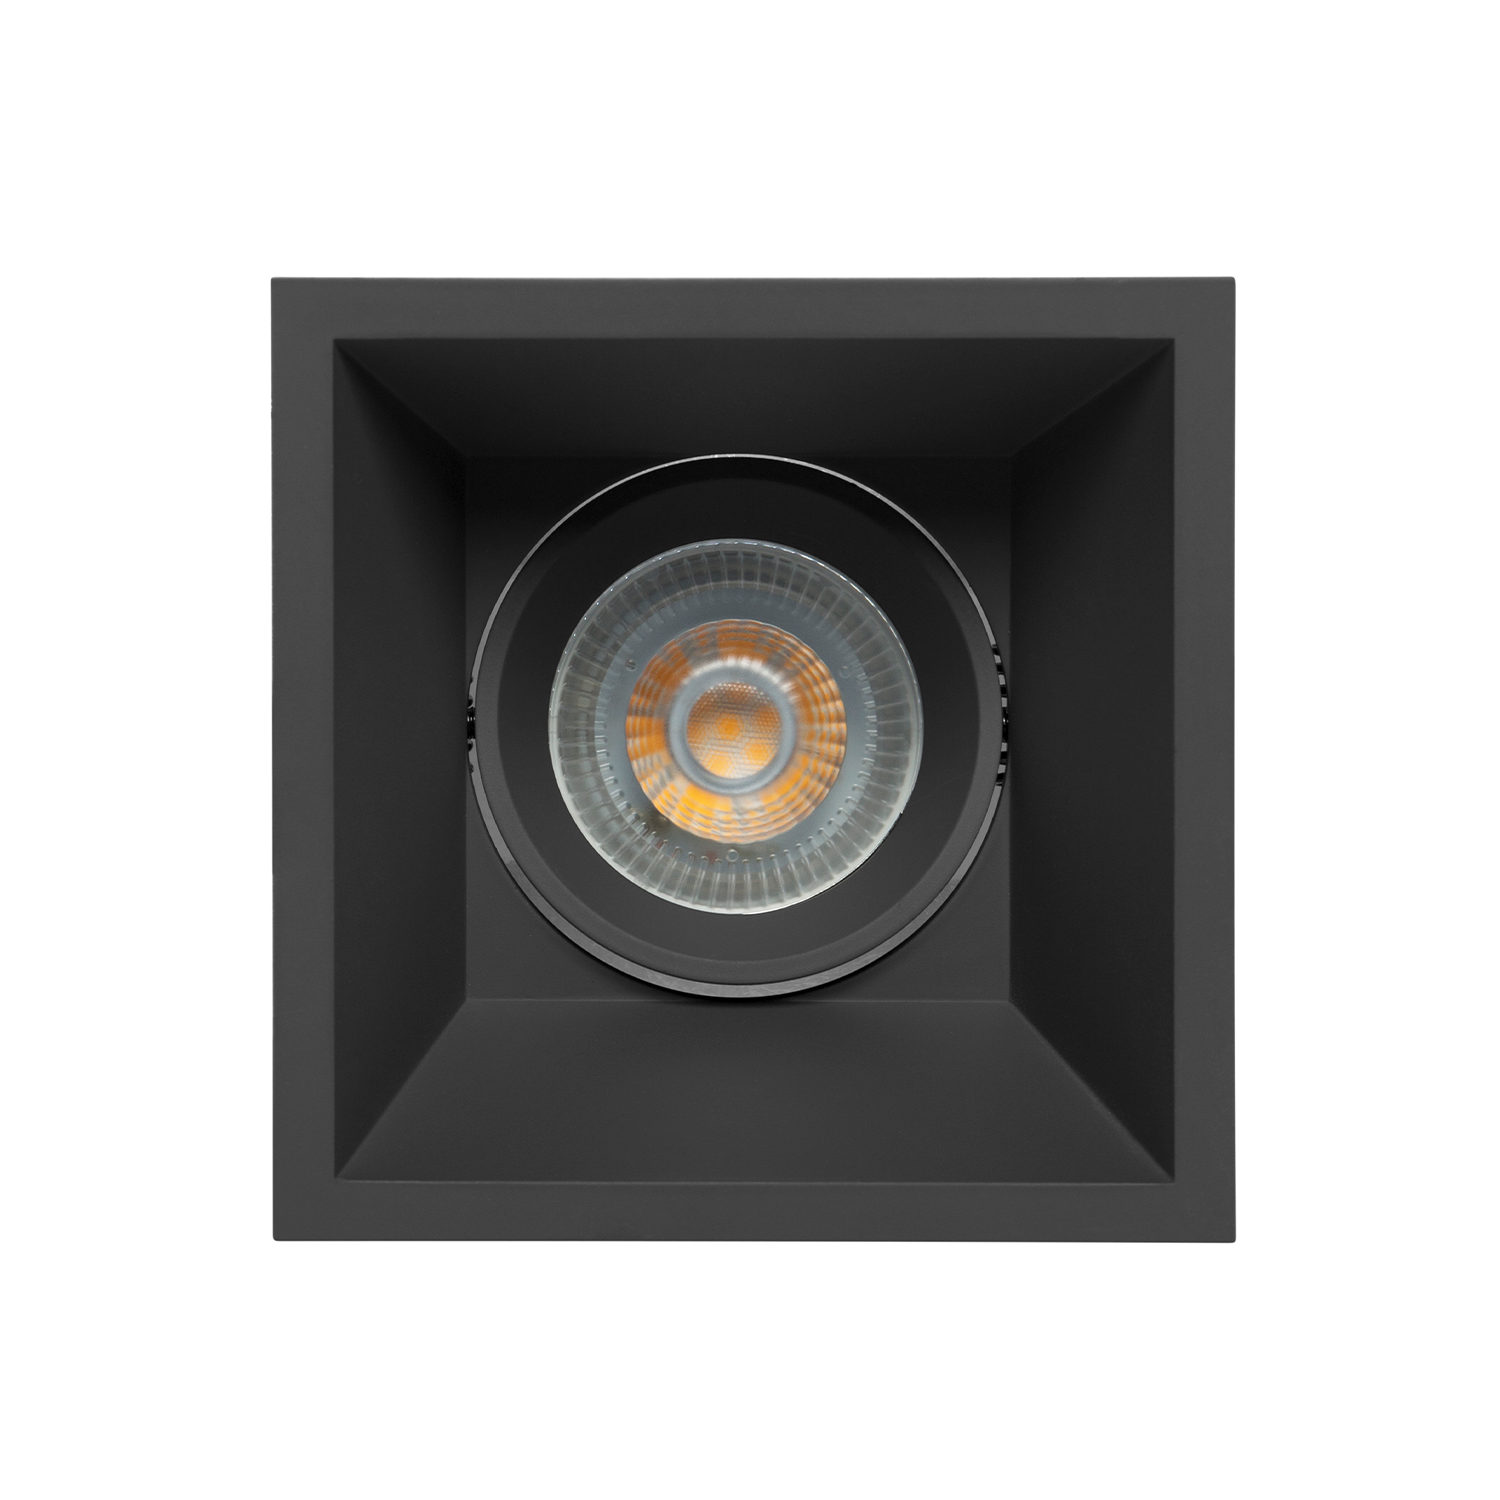 Luminario para empotrar en techo, tipo Wallwasher Dirigible, Modelo TH-3004 The Collection by Illux